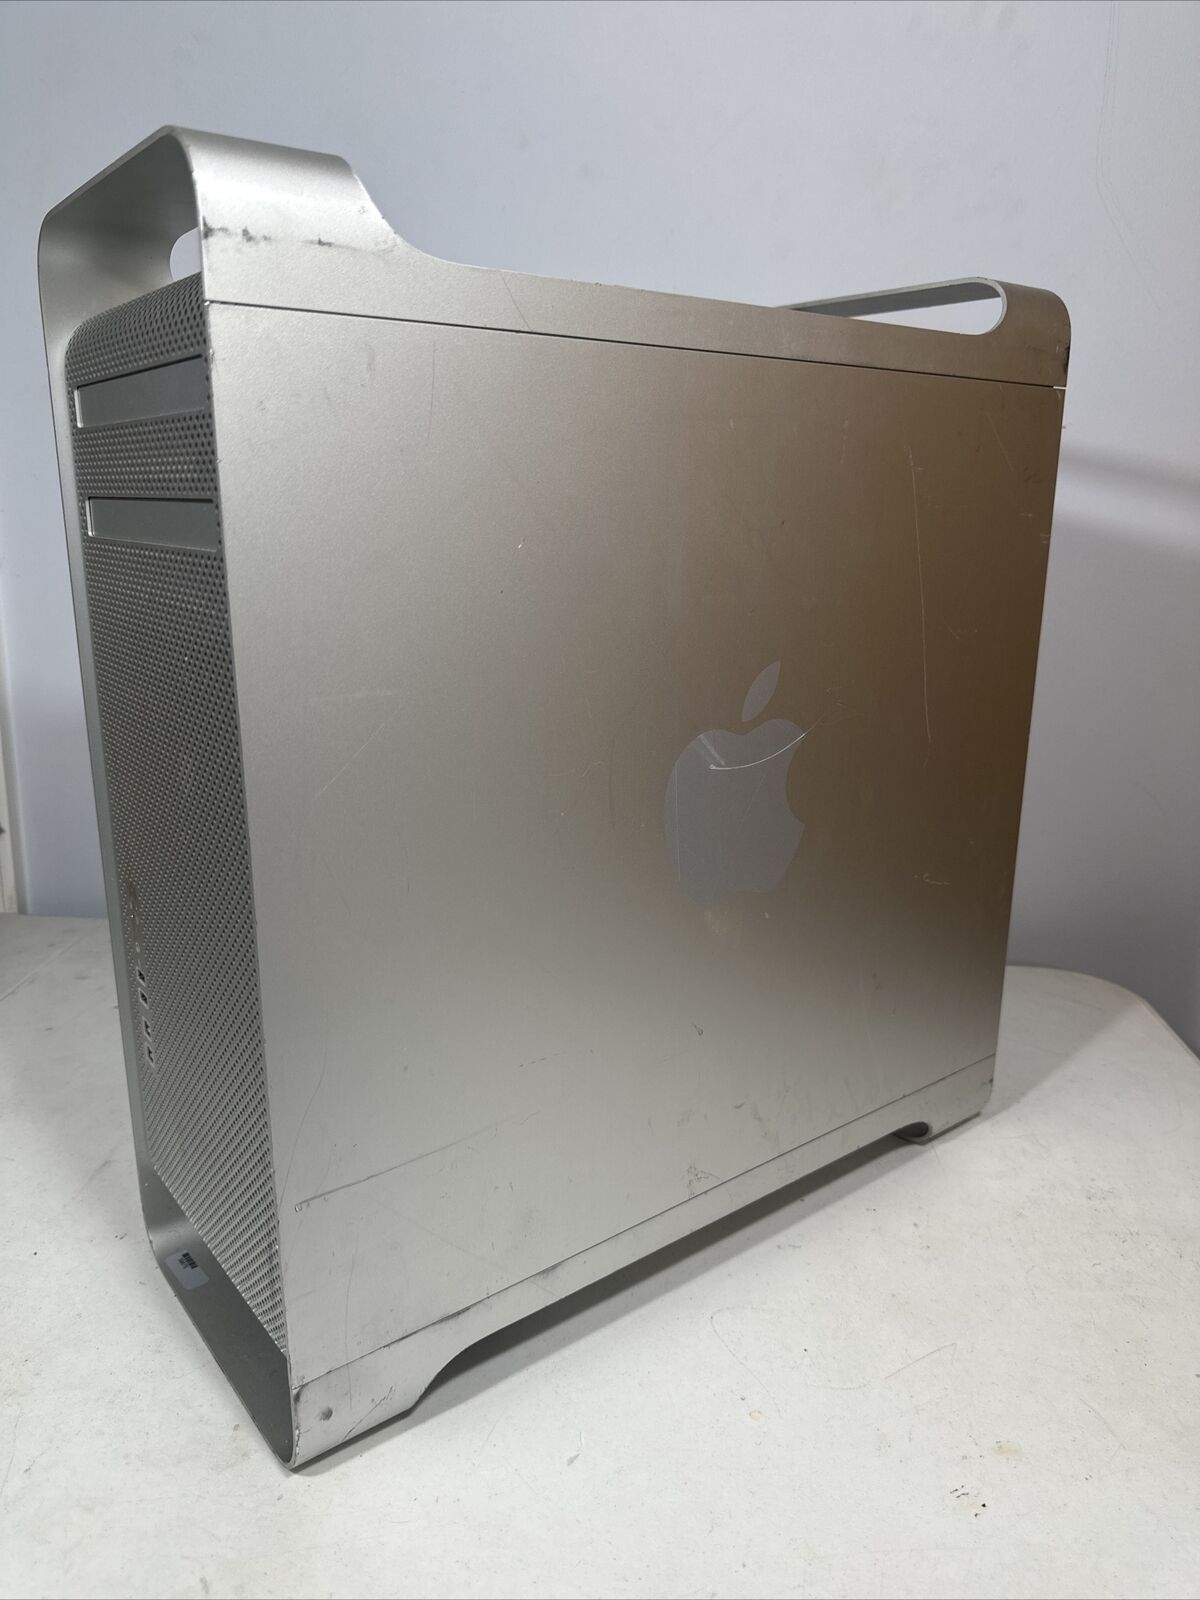 Apple Mac Pro 5,1 2012 2x2.66GHz Intel Xeon 12Core 32GB Ati Radeon 5770 1.5TB 96